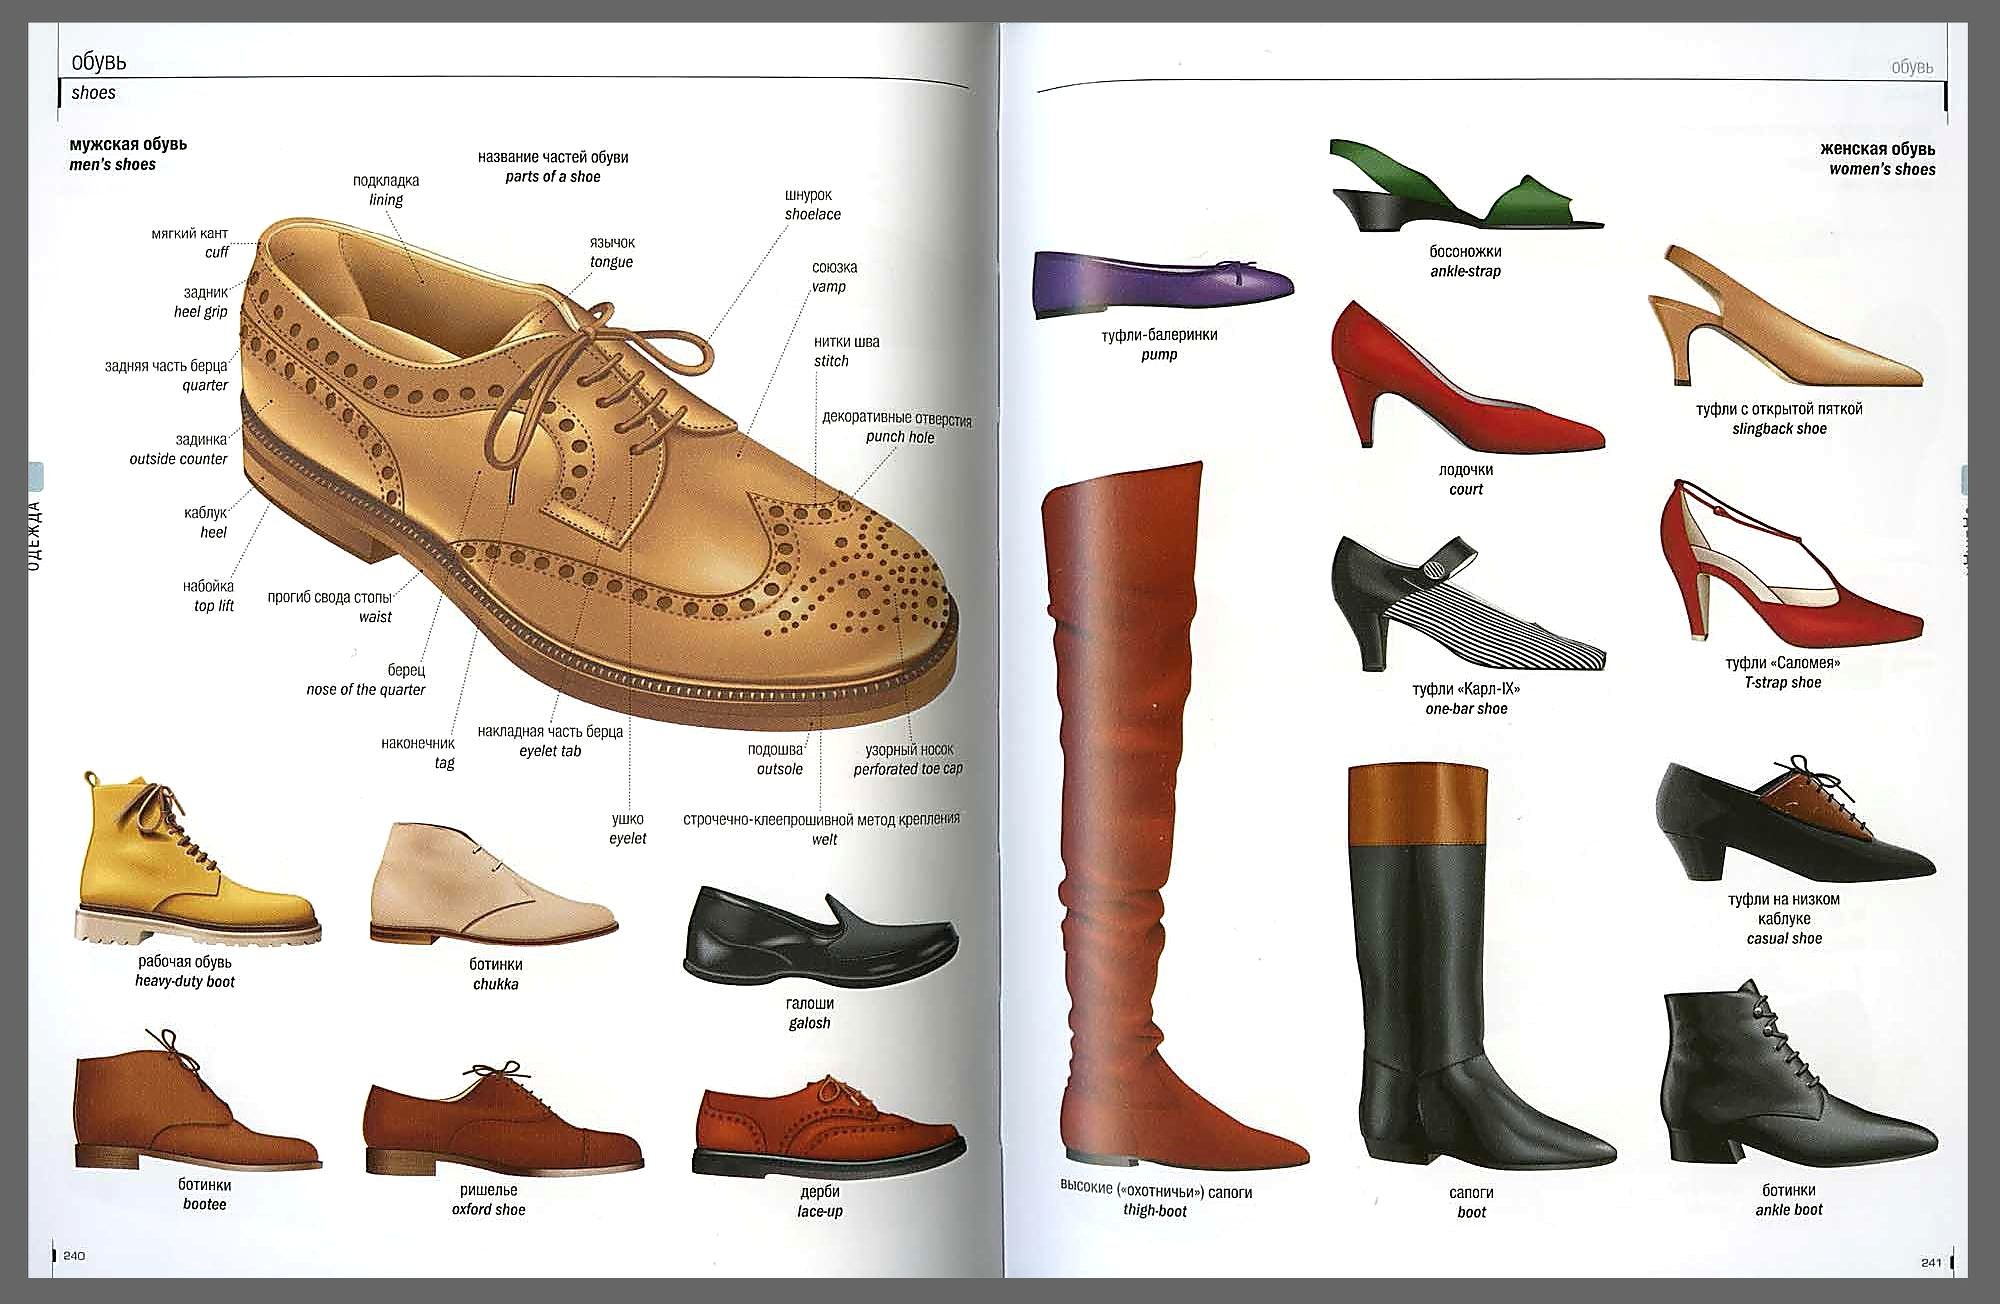 Название мужских ботинок. Виды обуви. Классификация женской обуви. Название обуви. Современные названия обуви.